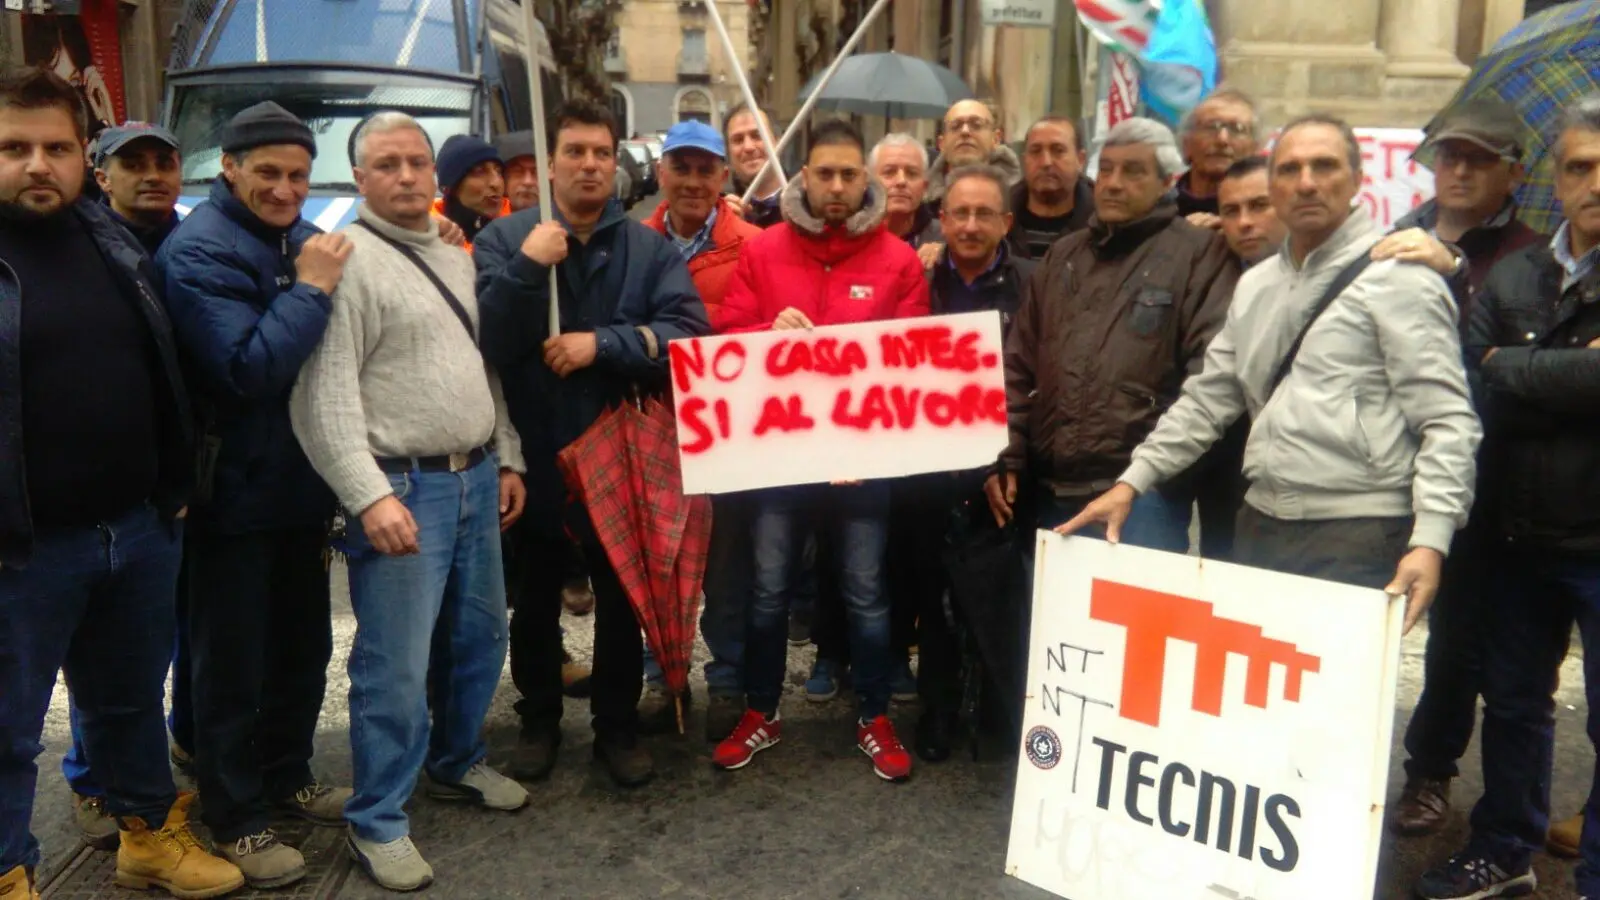 La protesta dei lavoratori Tecnis (foto Cgil Catania)